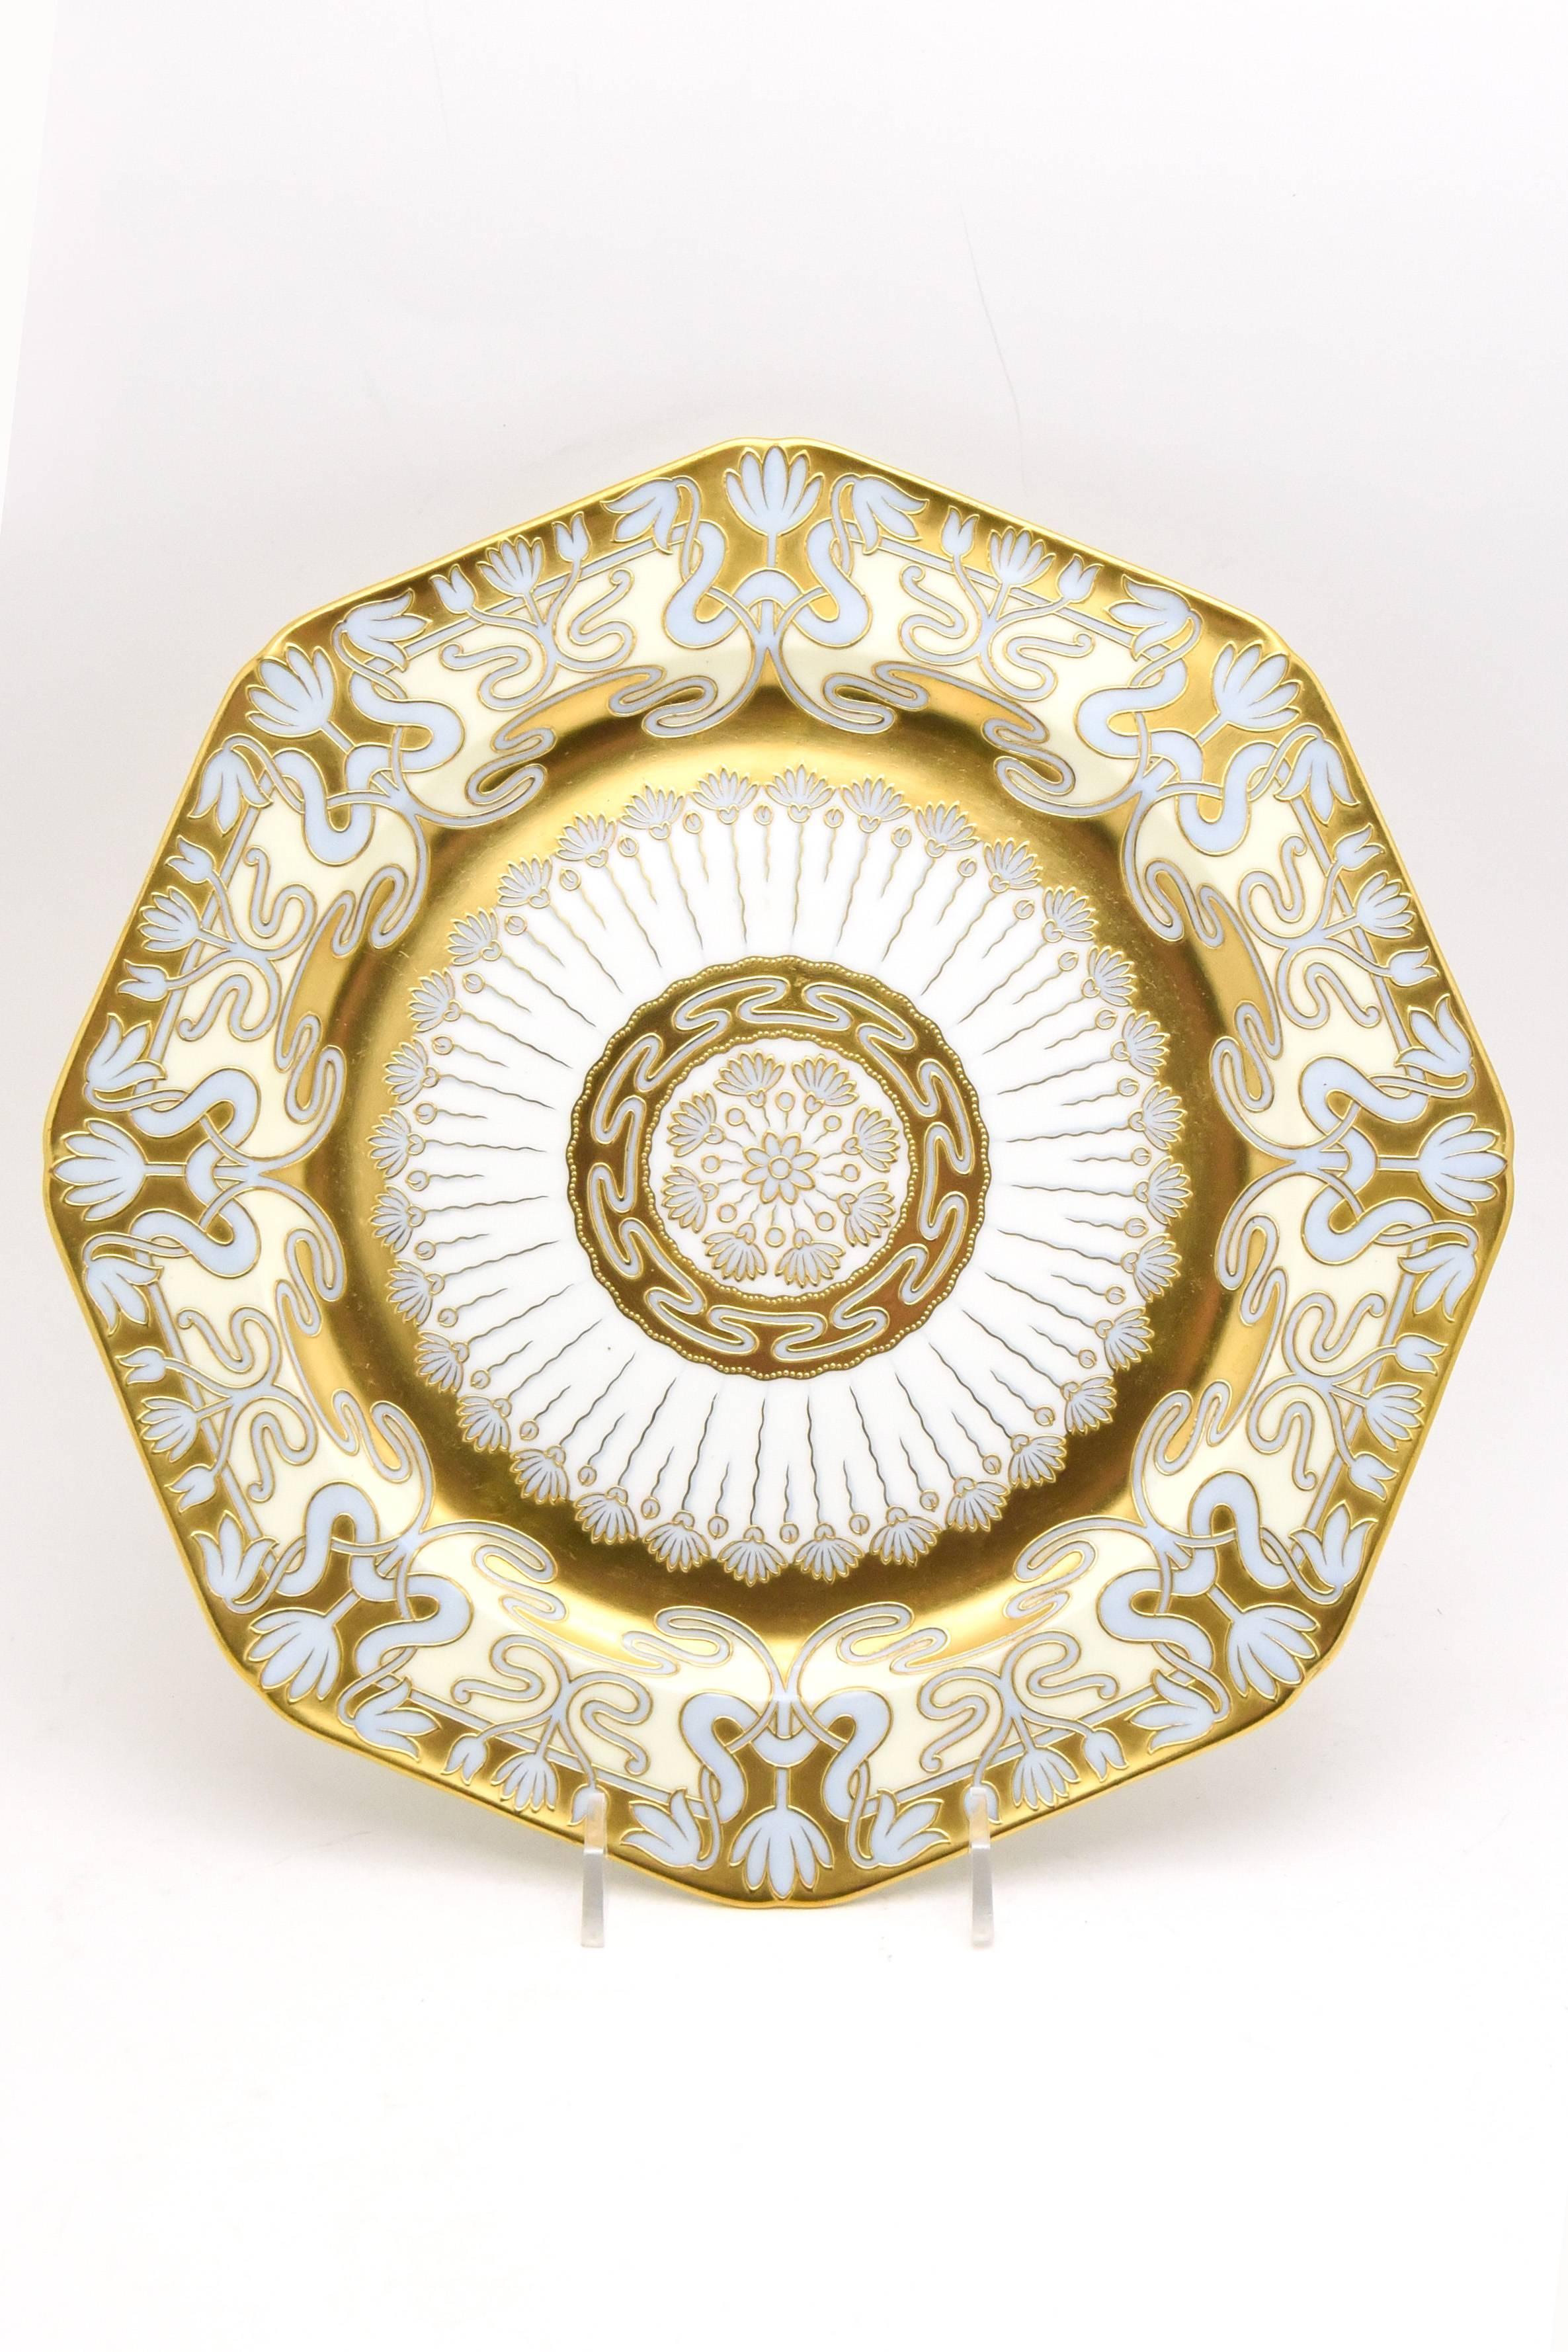 Il s'agit d'un ensemble très rare de 12 assiettes de service/présentation Cauldon présentant la décoration Art Nouveau dans toute sa splendeur. L'or en pâte en relief peint à la main sur du bleu robin crée un contraste doux et élégant avec les